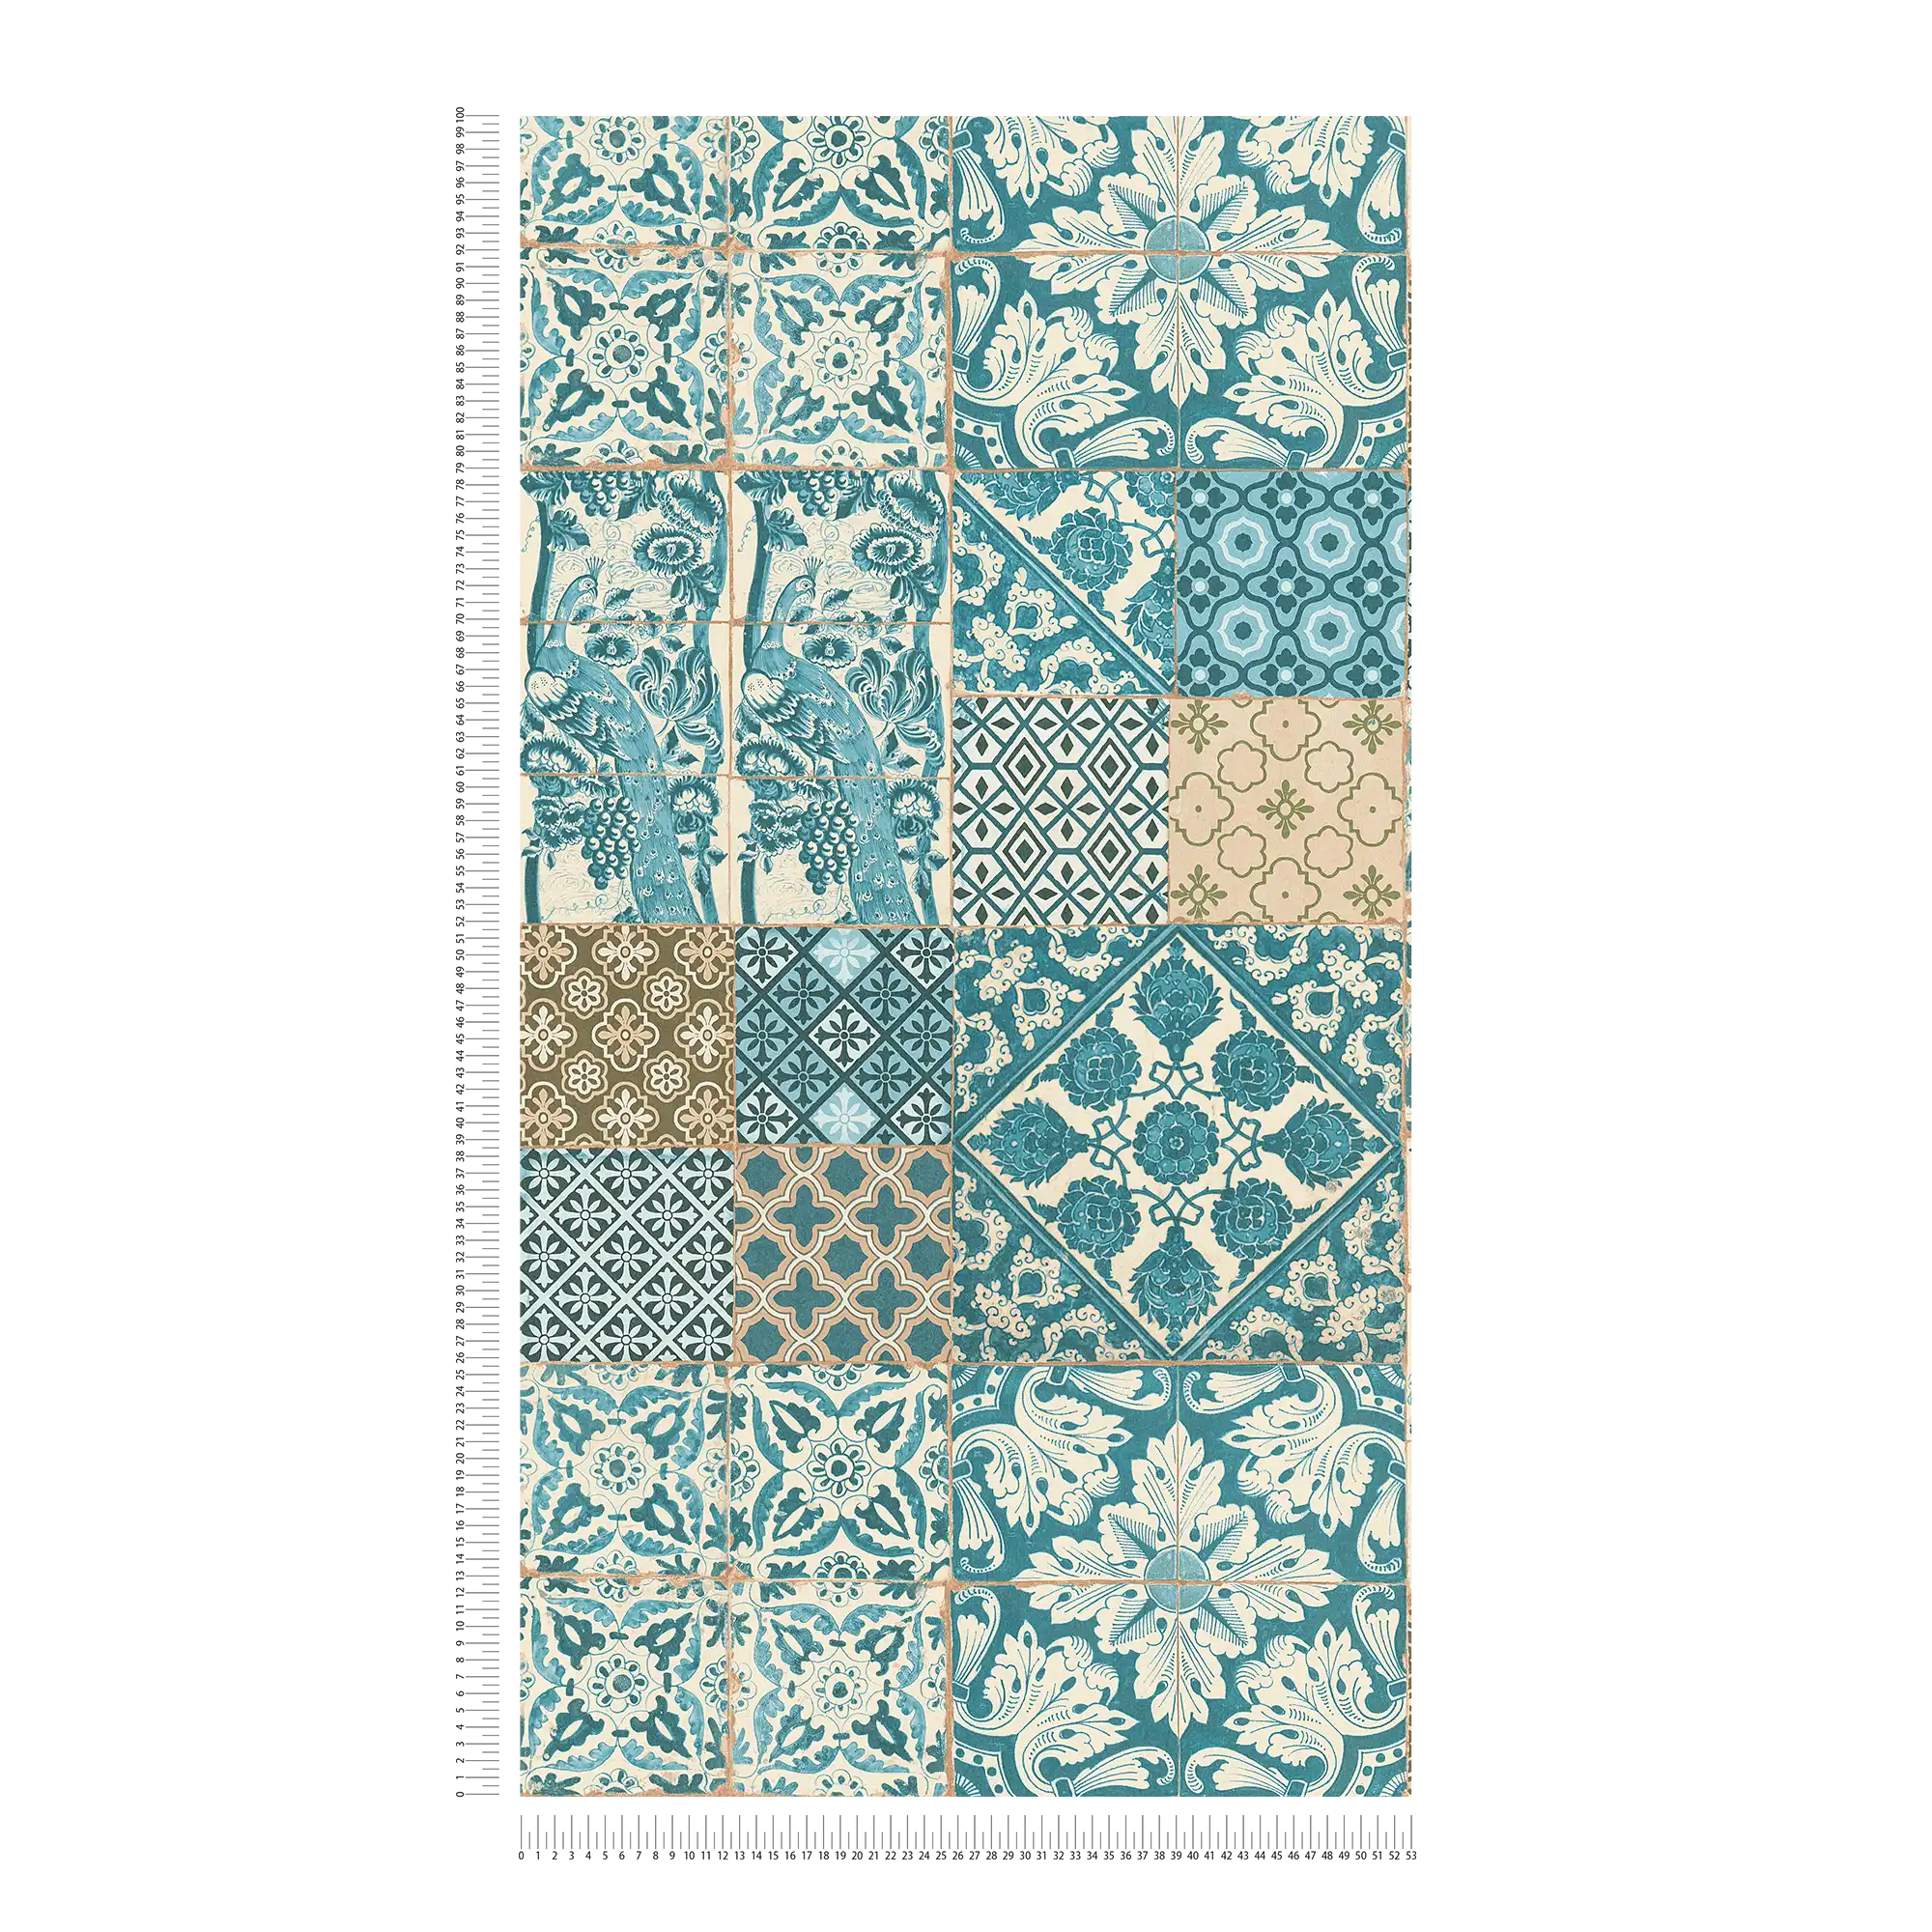             Tapete in Fliesen & Mosaik Design – Blau, Grün, Braun
        